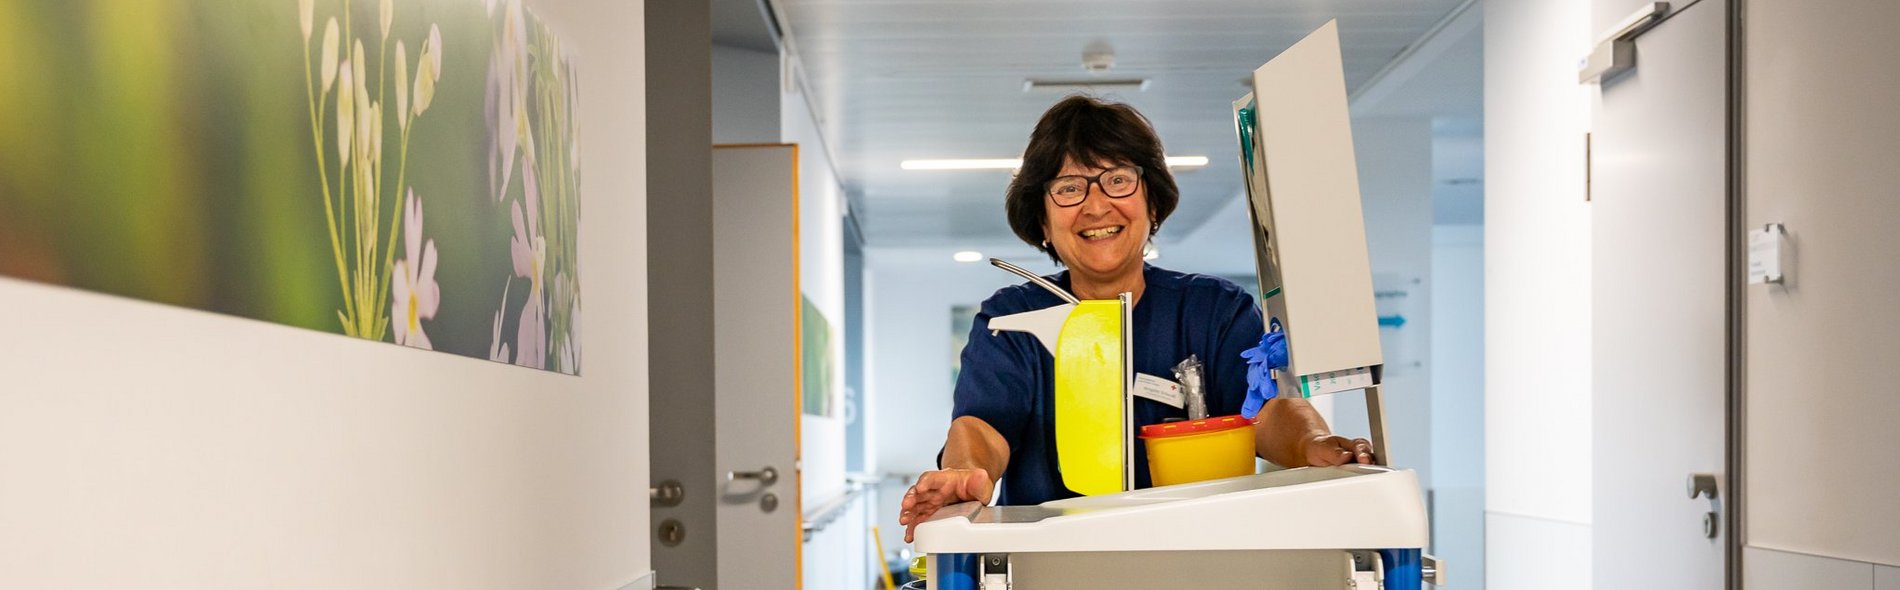 Lächelnde Pflegefachkraft mit Pflegewagen auf dem Weg zum Patienten im modernen Flur der Wahlleistungsstation